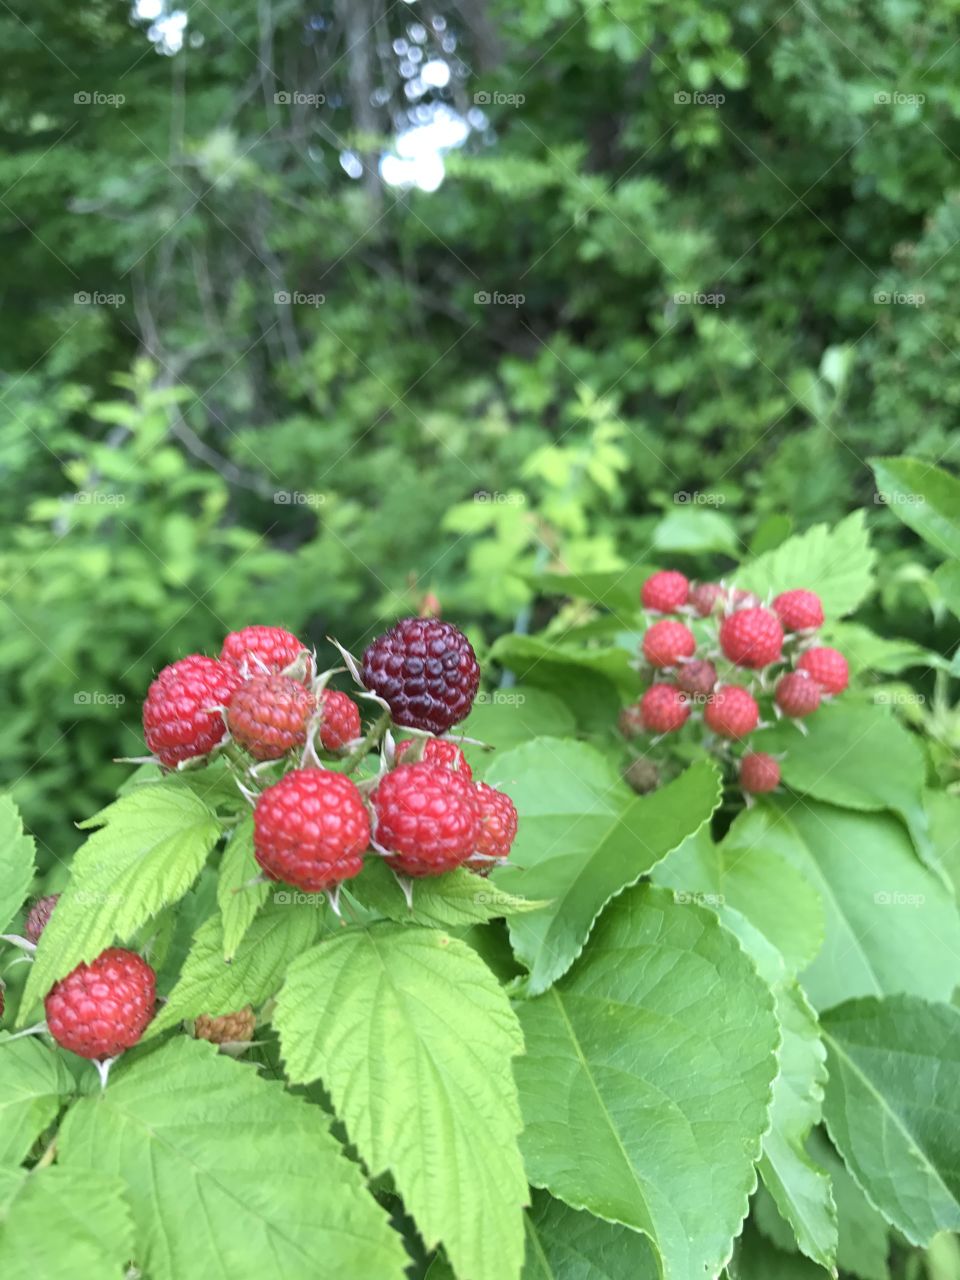 Berries in the wild